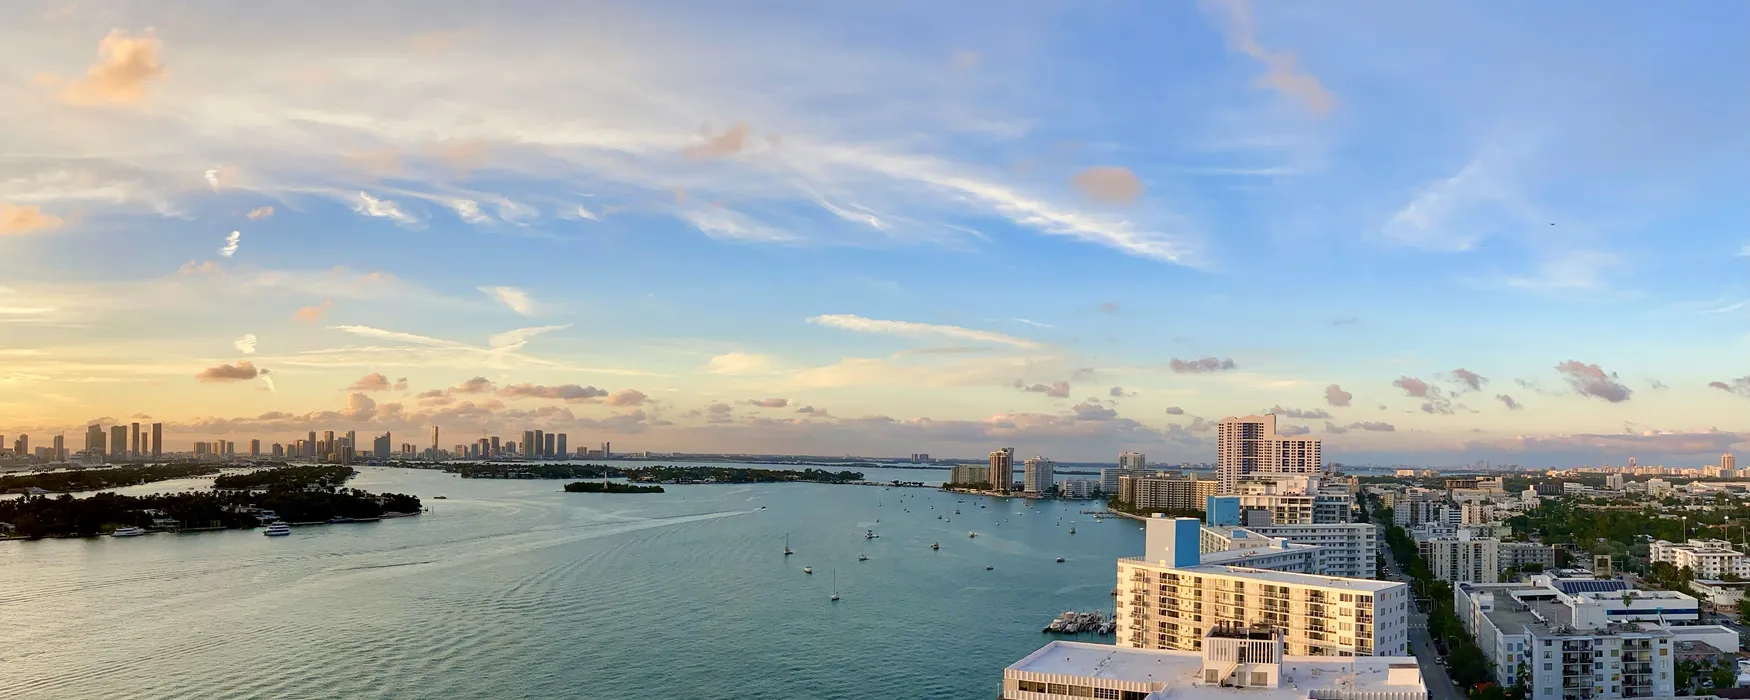 Dingen om te doen in Miami - inclusief een mooi uitzicht